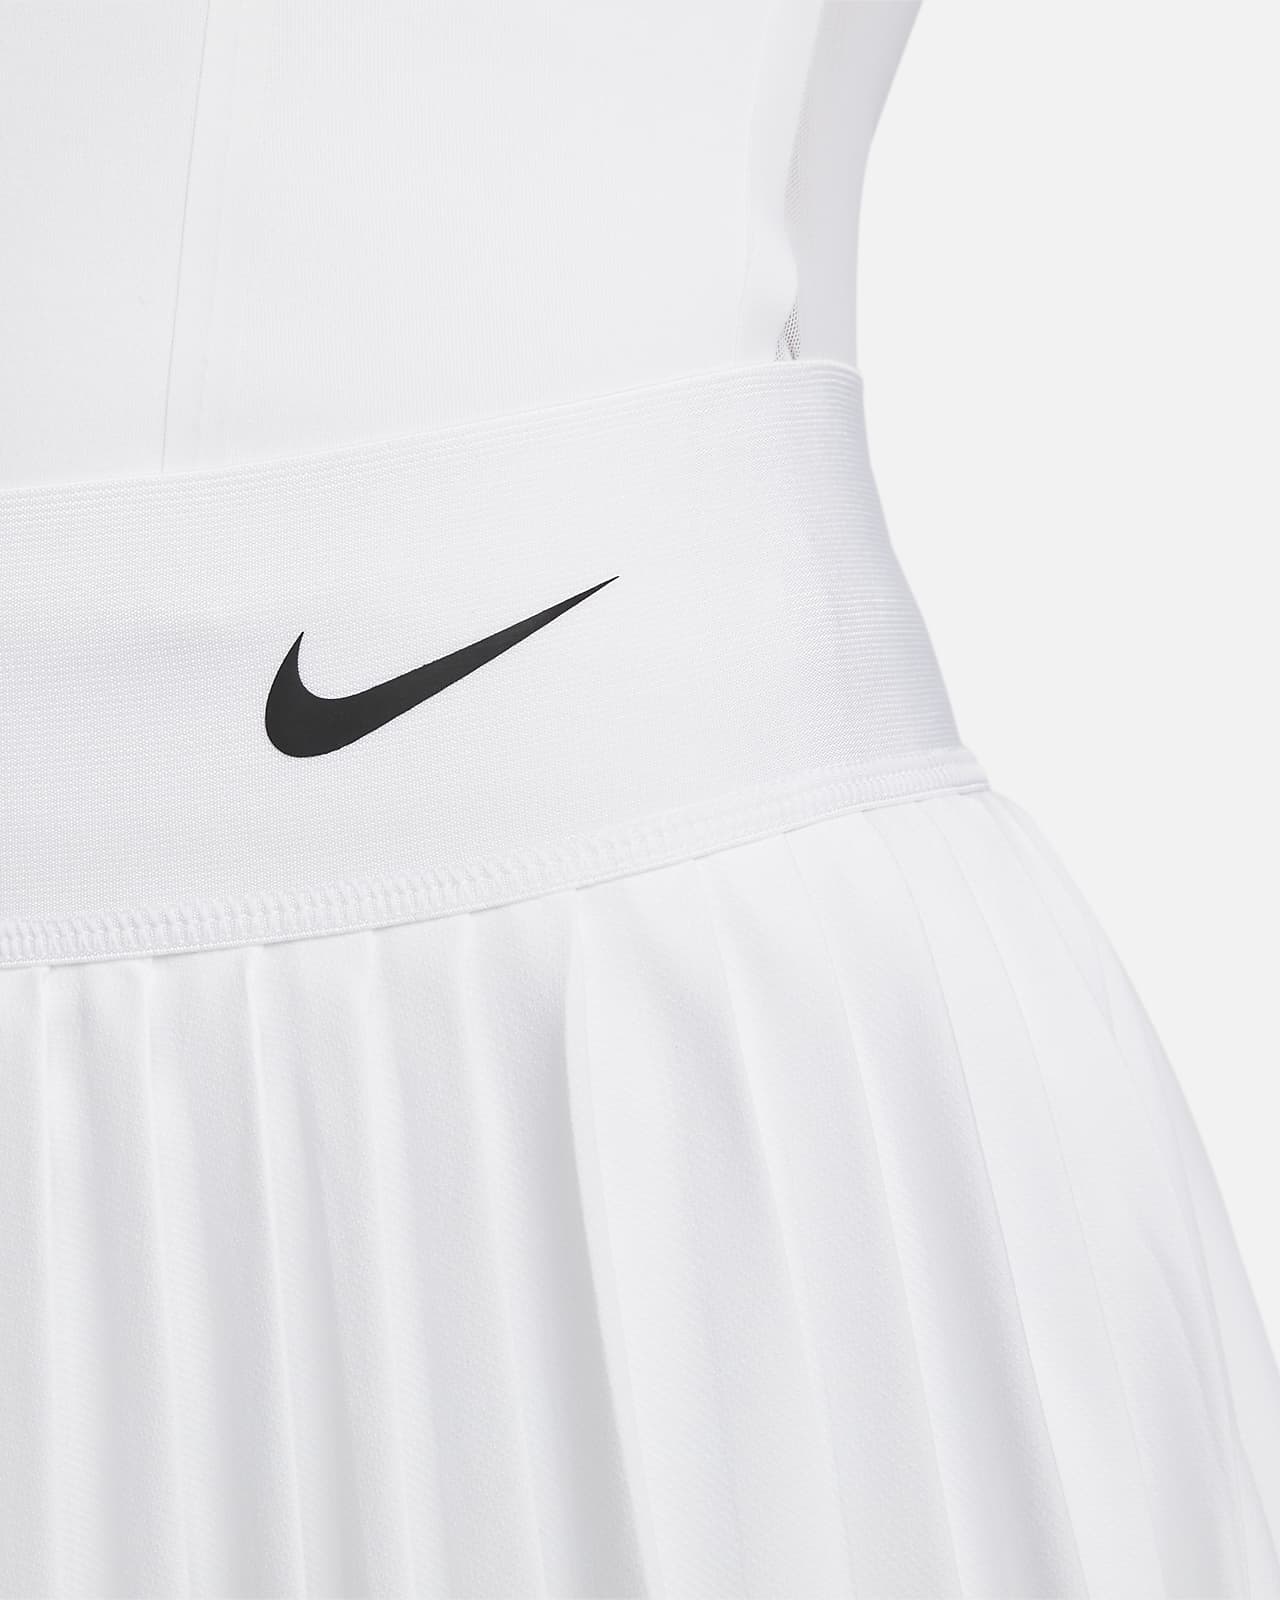 Chevron Pleated Tennis Skirt: Women's Designer Bottoms